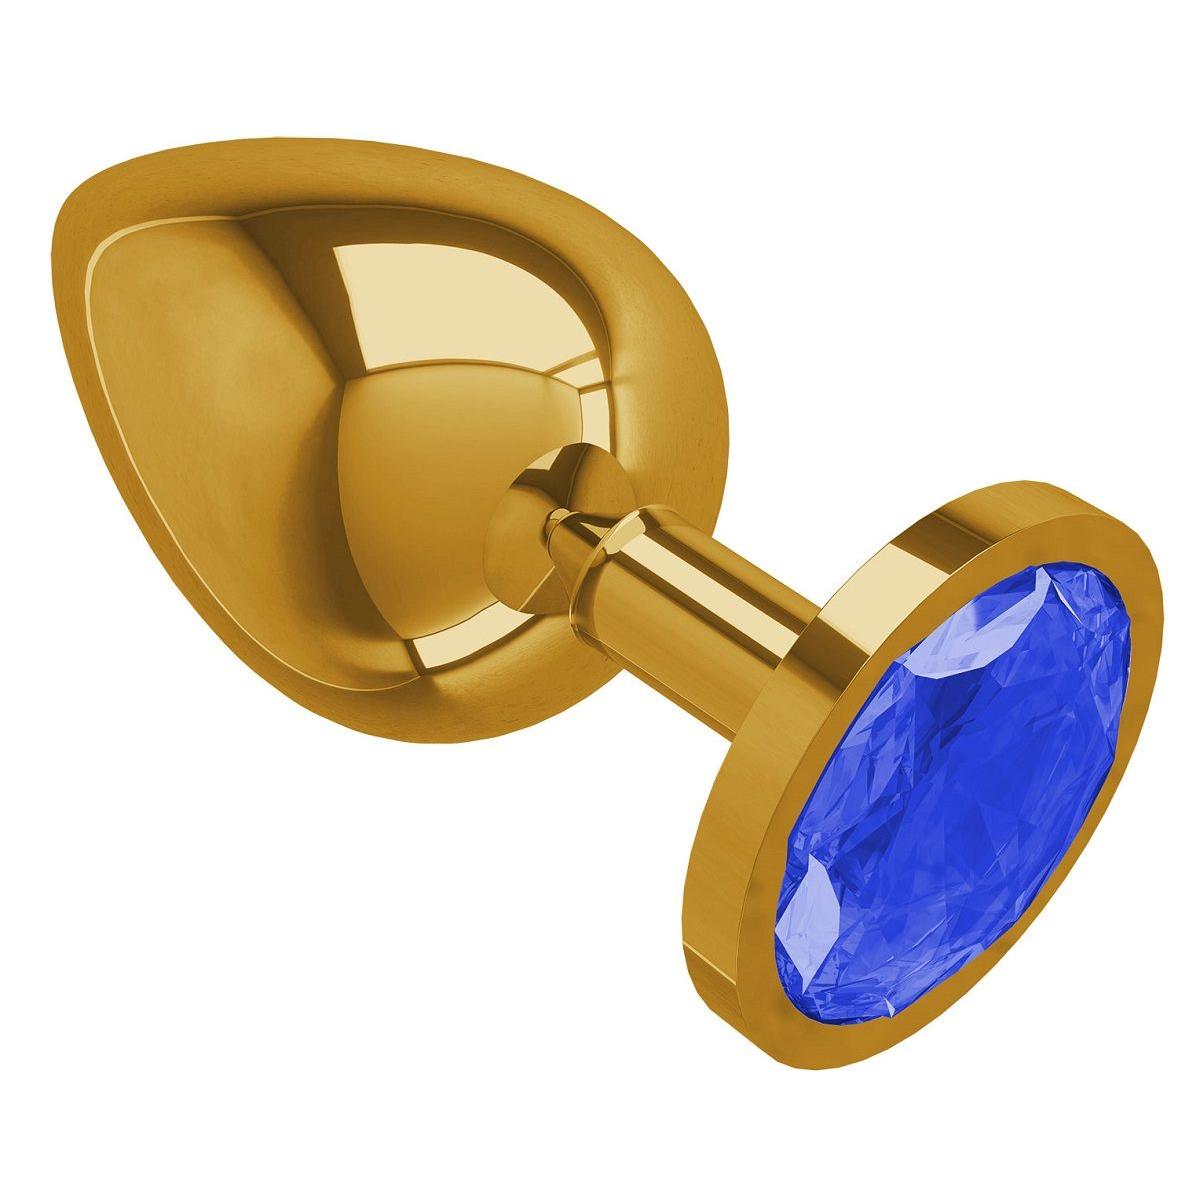 Золотистая большая анальная пробка с синим кристаллом - 9,5 см.